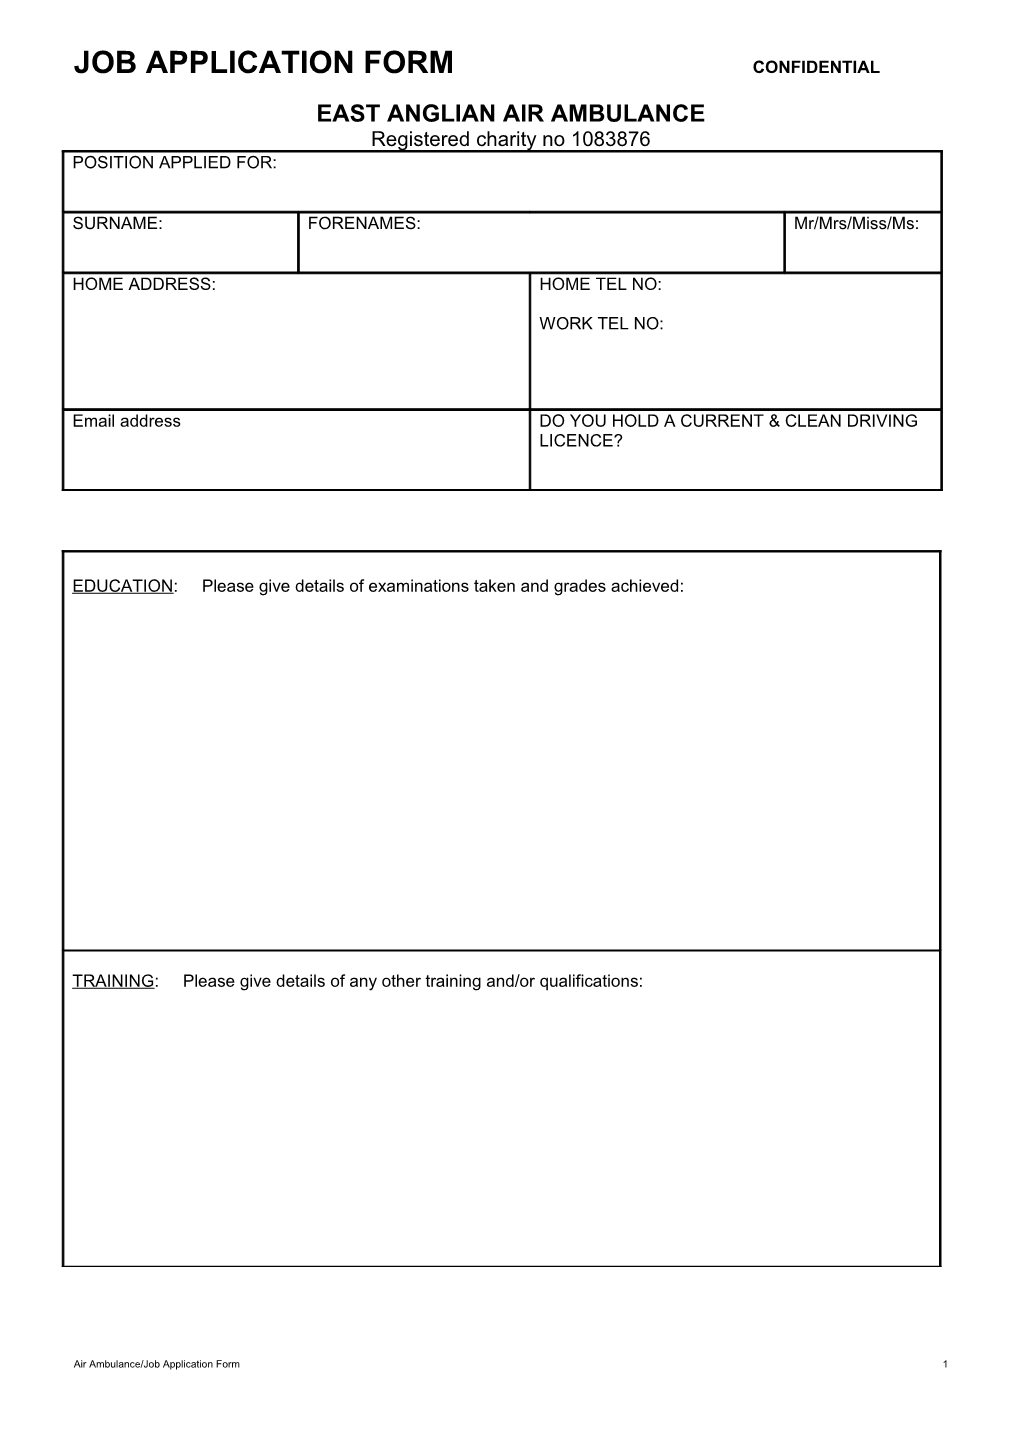 Job Application Form Confidential